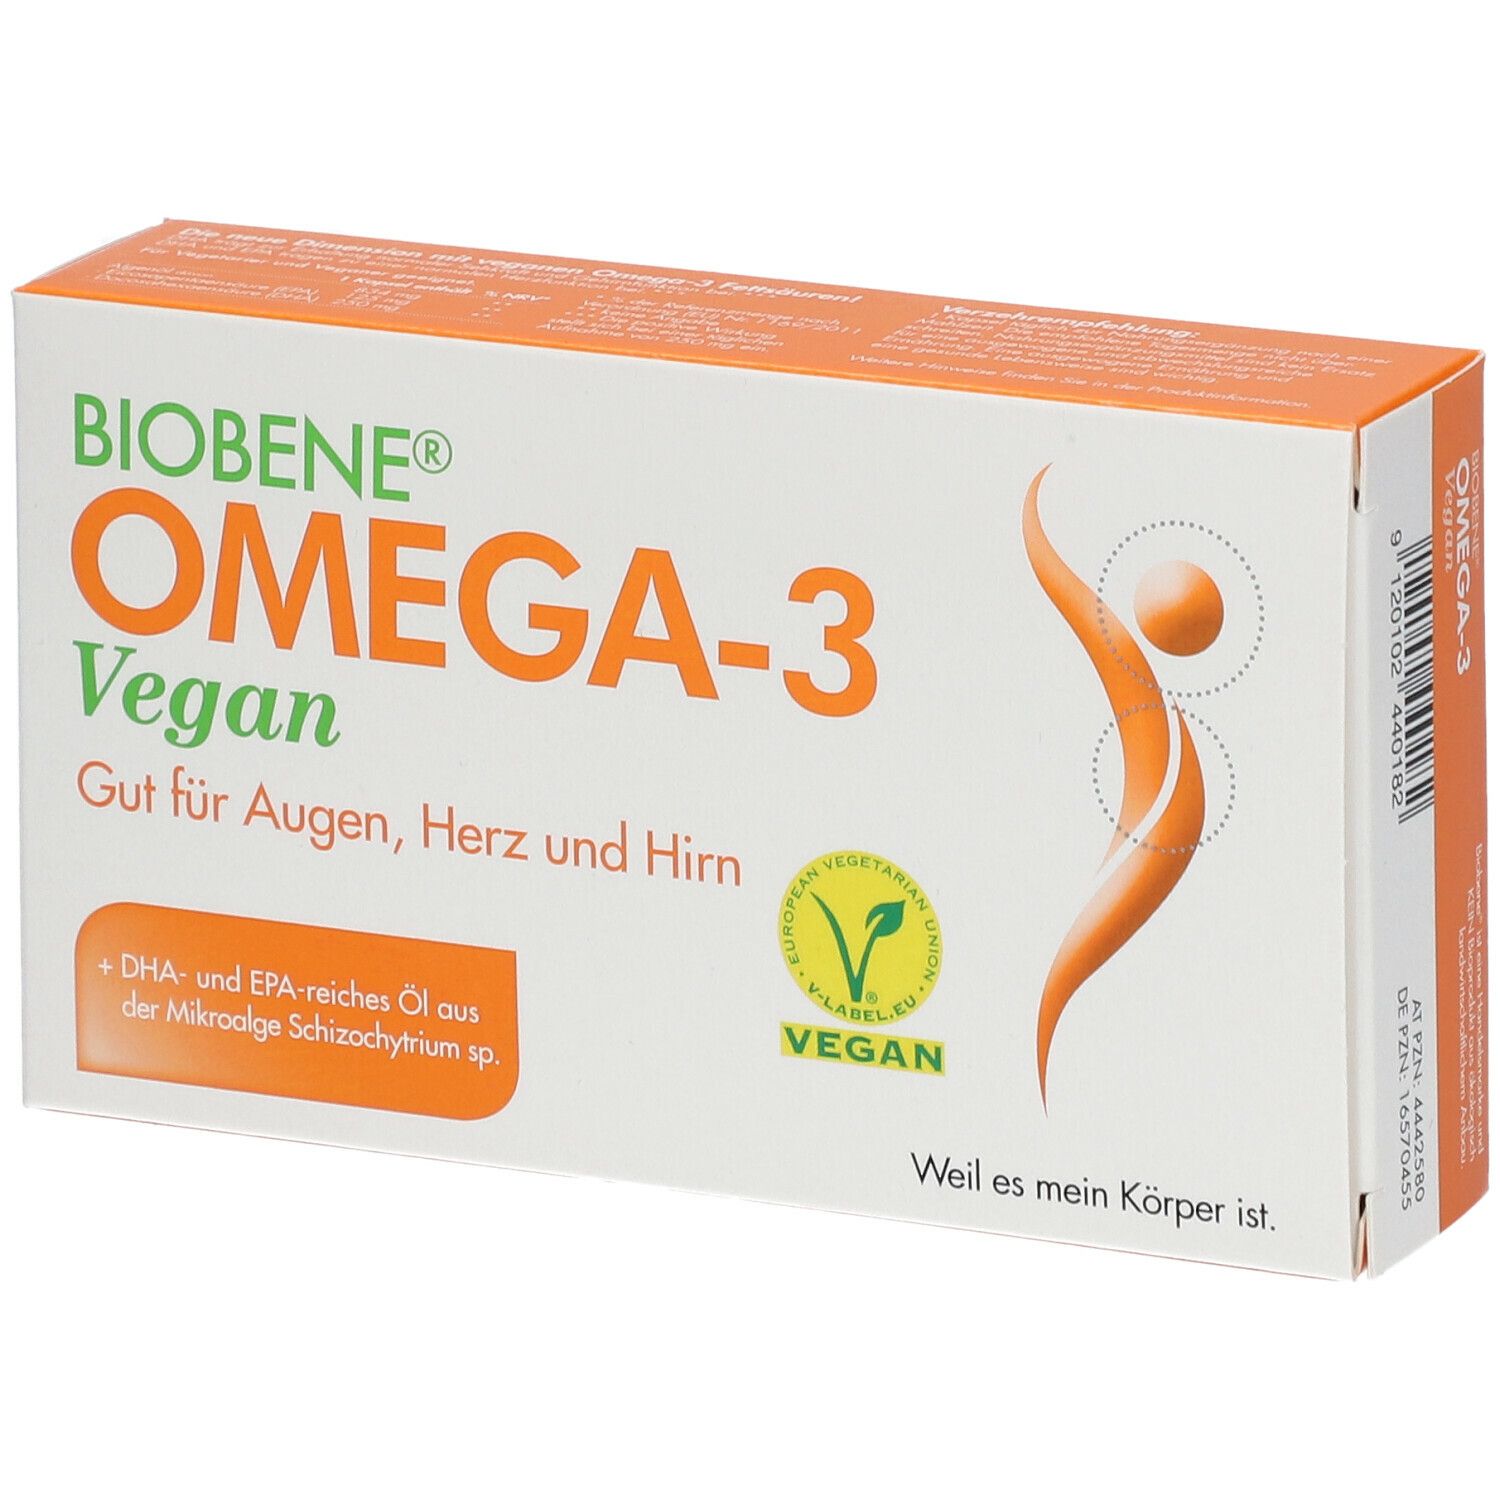 BIOBENE® Omega-3 Vegan